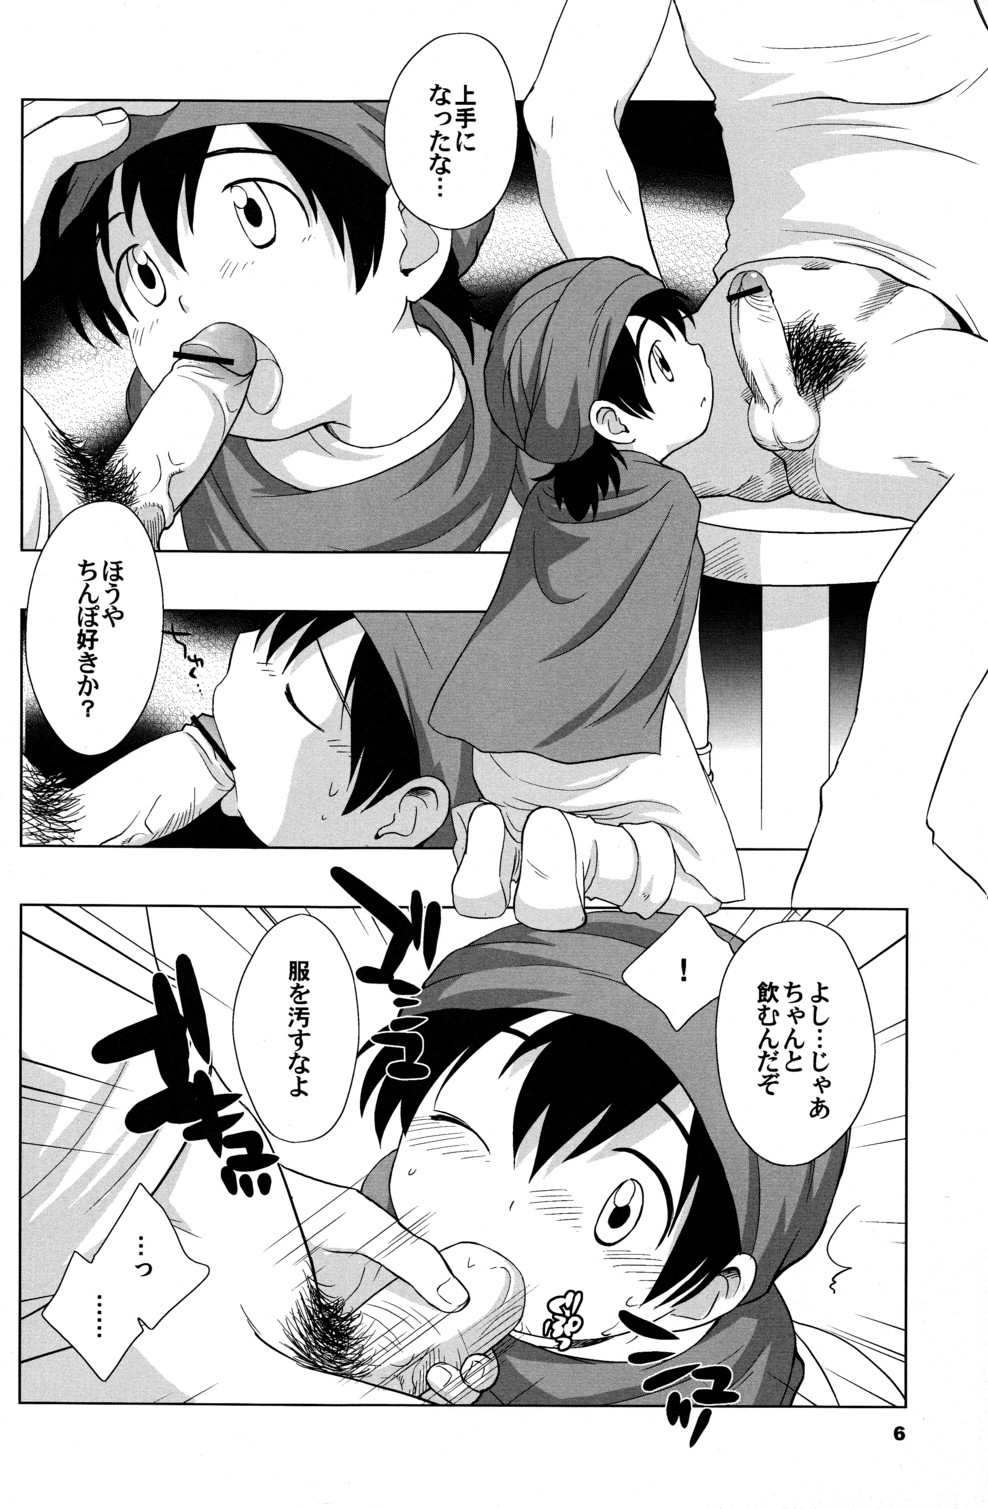 (Shotaket 10) [Tokuda (Ueda Yuu)] Hoshifuru Seisui (Dragon Quest V) page 6 full